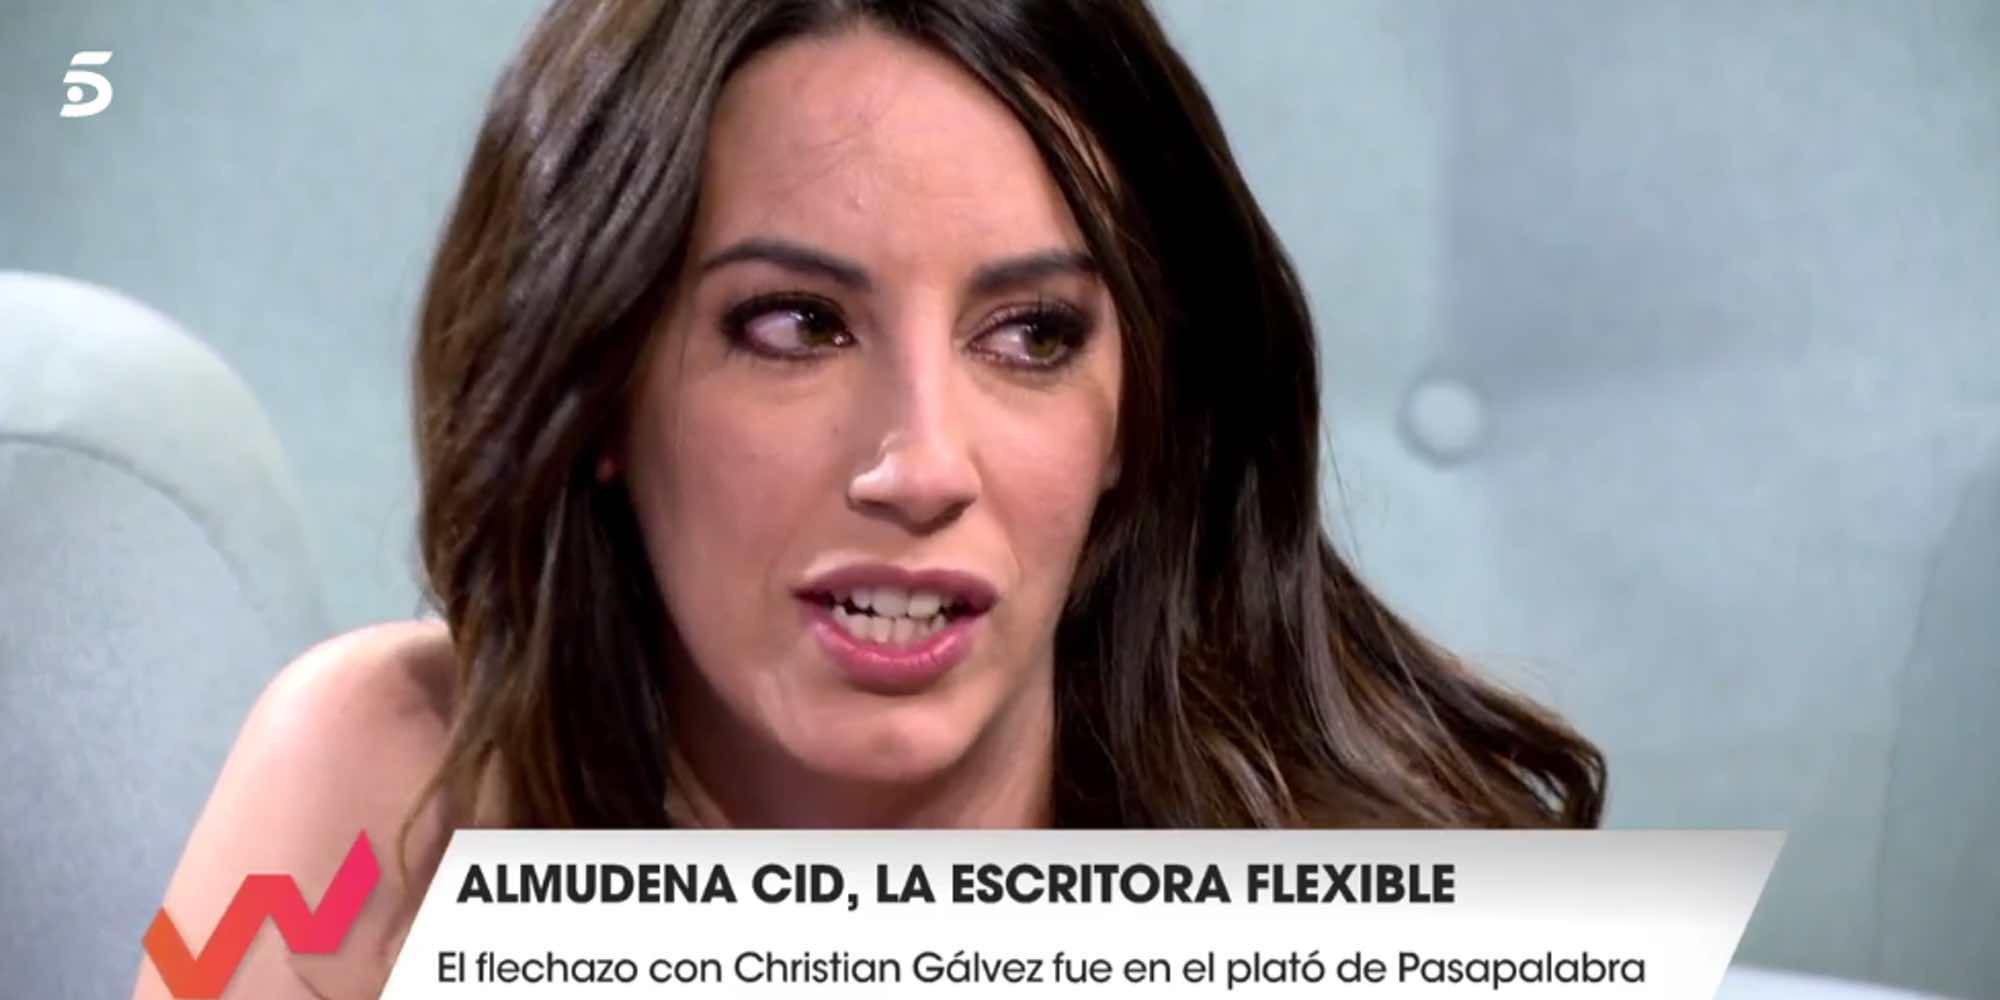 Almudena Cid y la presión social que vivía por no quedarse embarazada: "He tenido pesadillas"